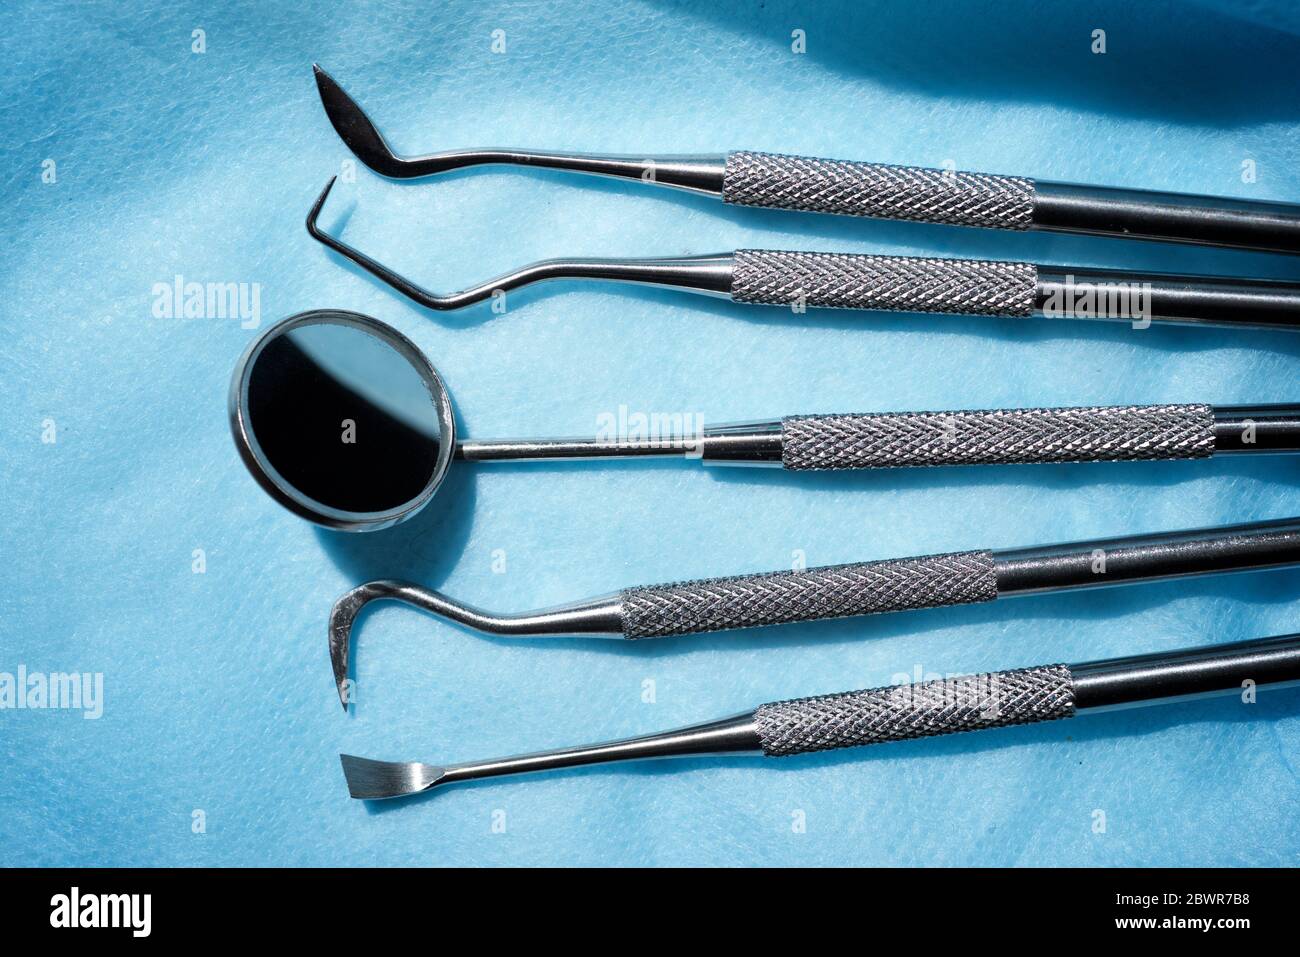 Instrumente, die vom Zahnarzt verwendet werden Stockfotografie - Alamy